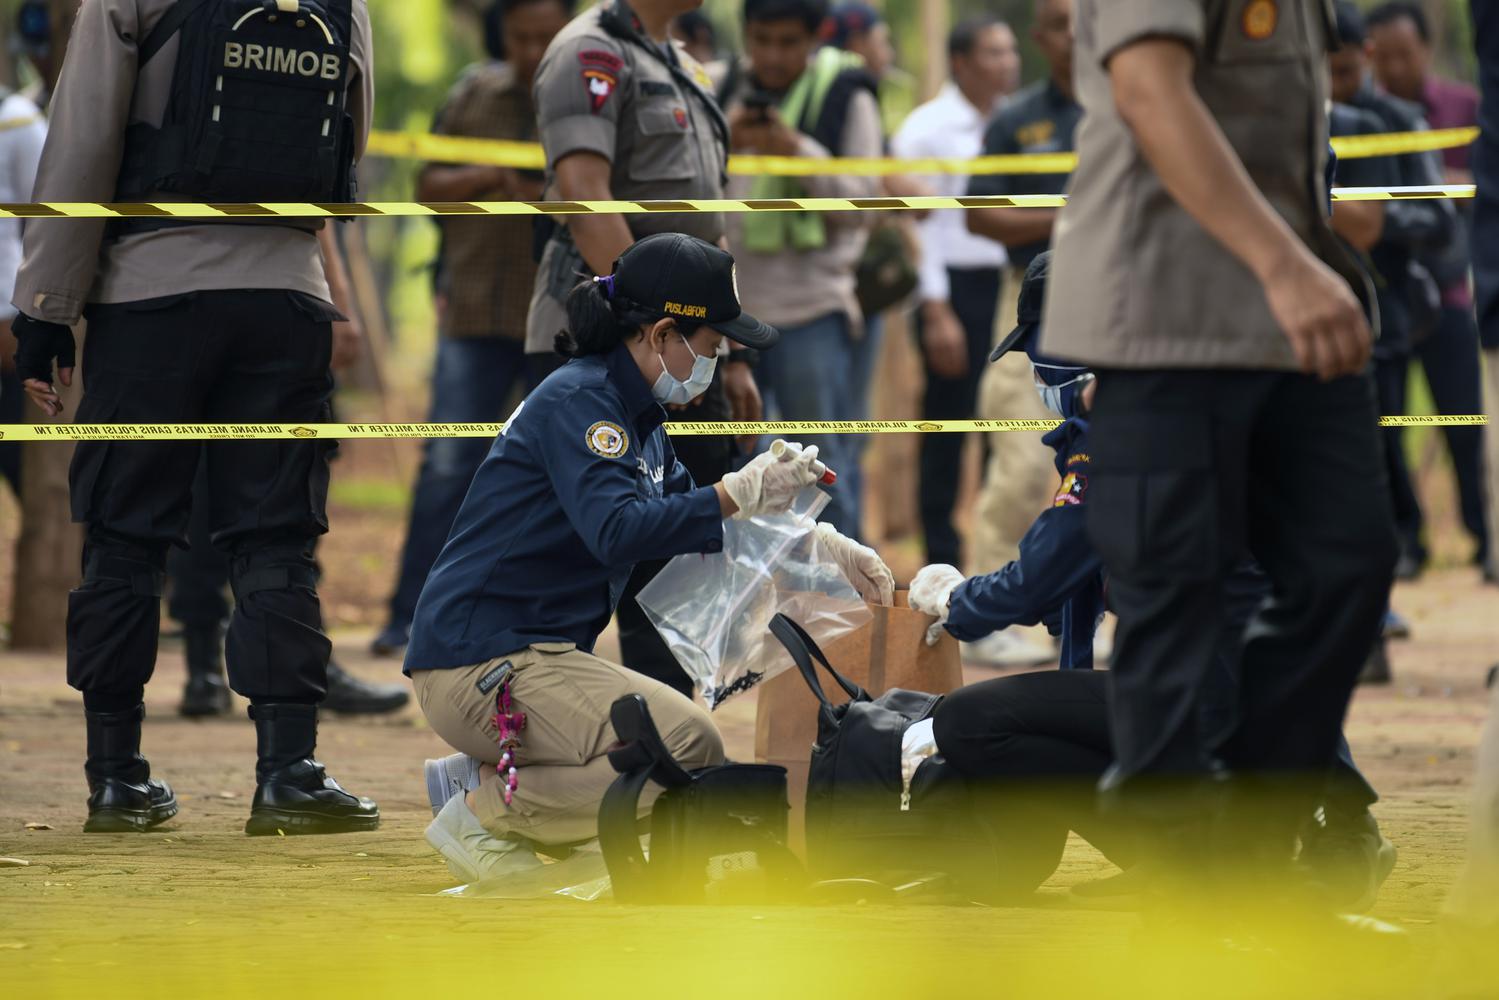 Anggota Labfor Mabes Polri mengumpulkan barang bukti di TKP ledakan di kawasan Monas, Jakarta, Selasa (3/12/2019). Sebelumnya, telah terjadi ledakan di sekitar area Monas. Polres Metro Jakarta Pusat telah mengerahkan tim untuk menyelidiki kasus ledakan tersebut.

